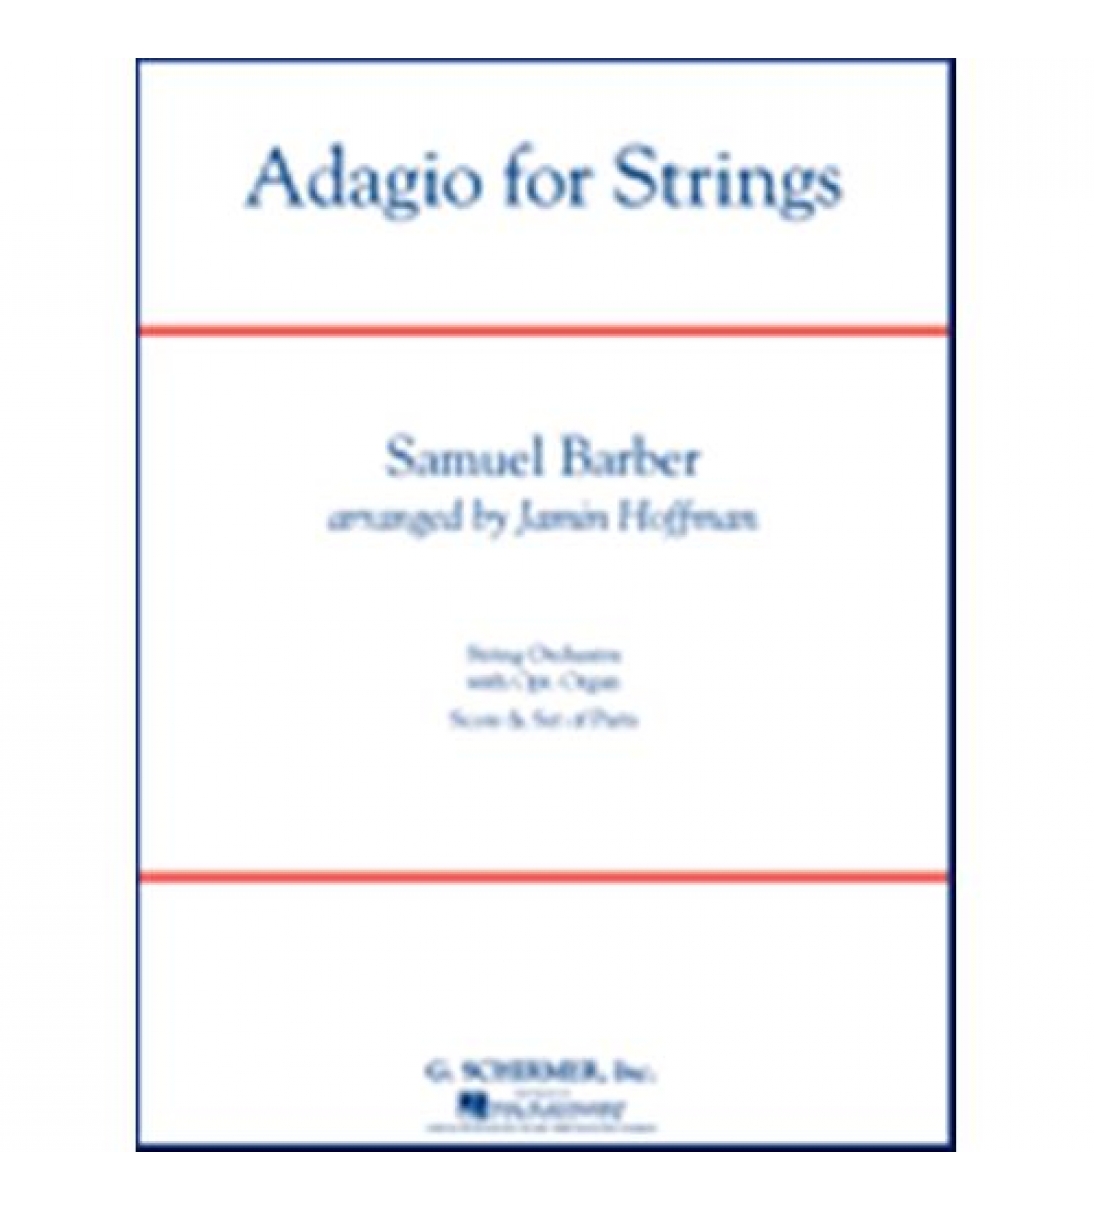 Adagio for strings